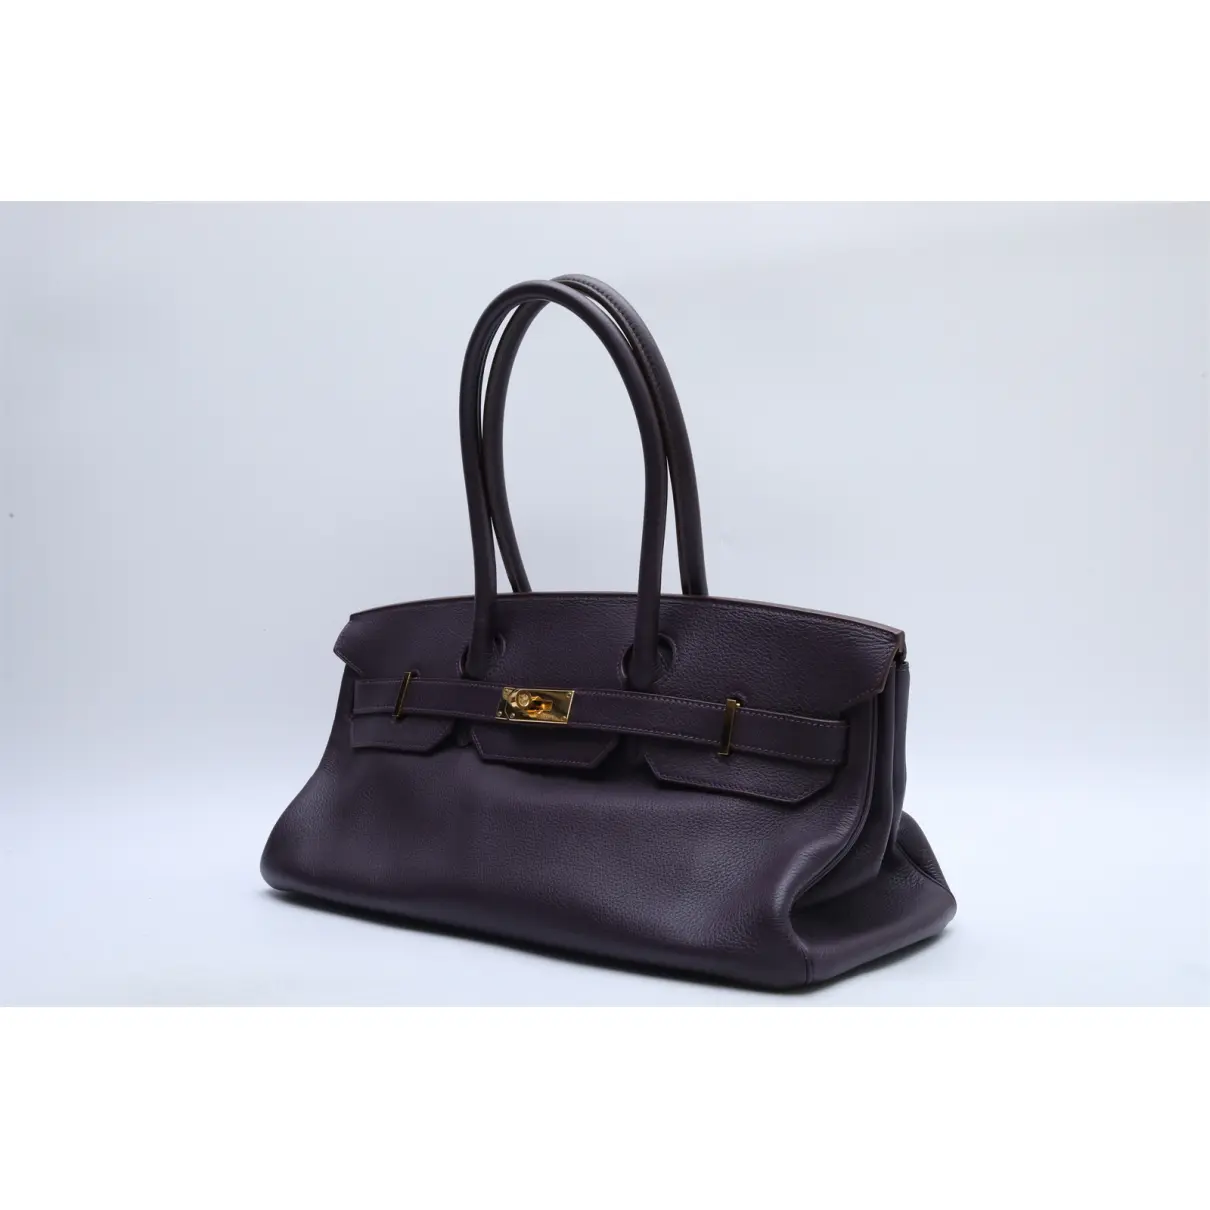 Buy Hermès Birkin Shoulder leather handbag online - Vintage